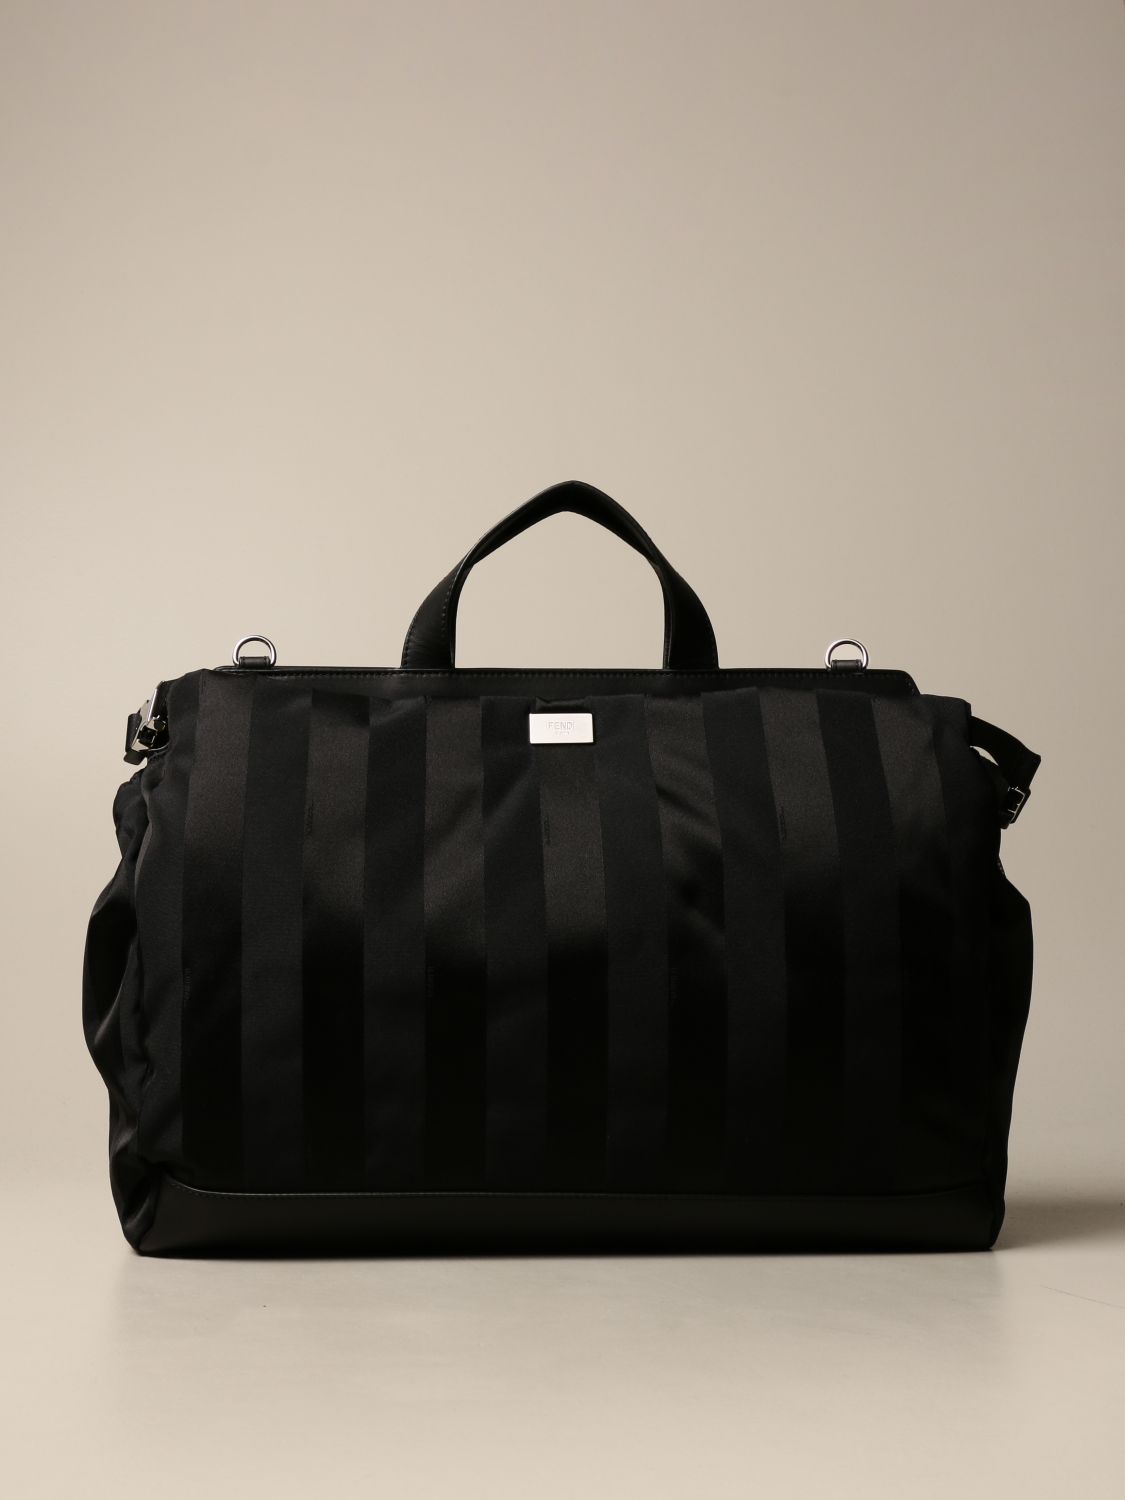 FENDI: Peekaboo bag in recycled nylon with logo bands - Black | FENDI ...